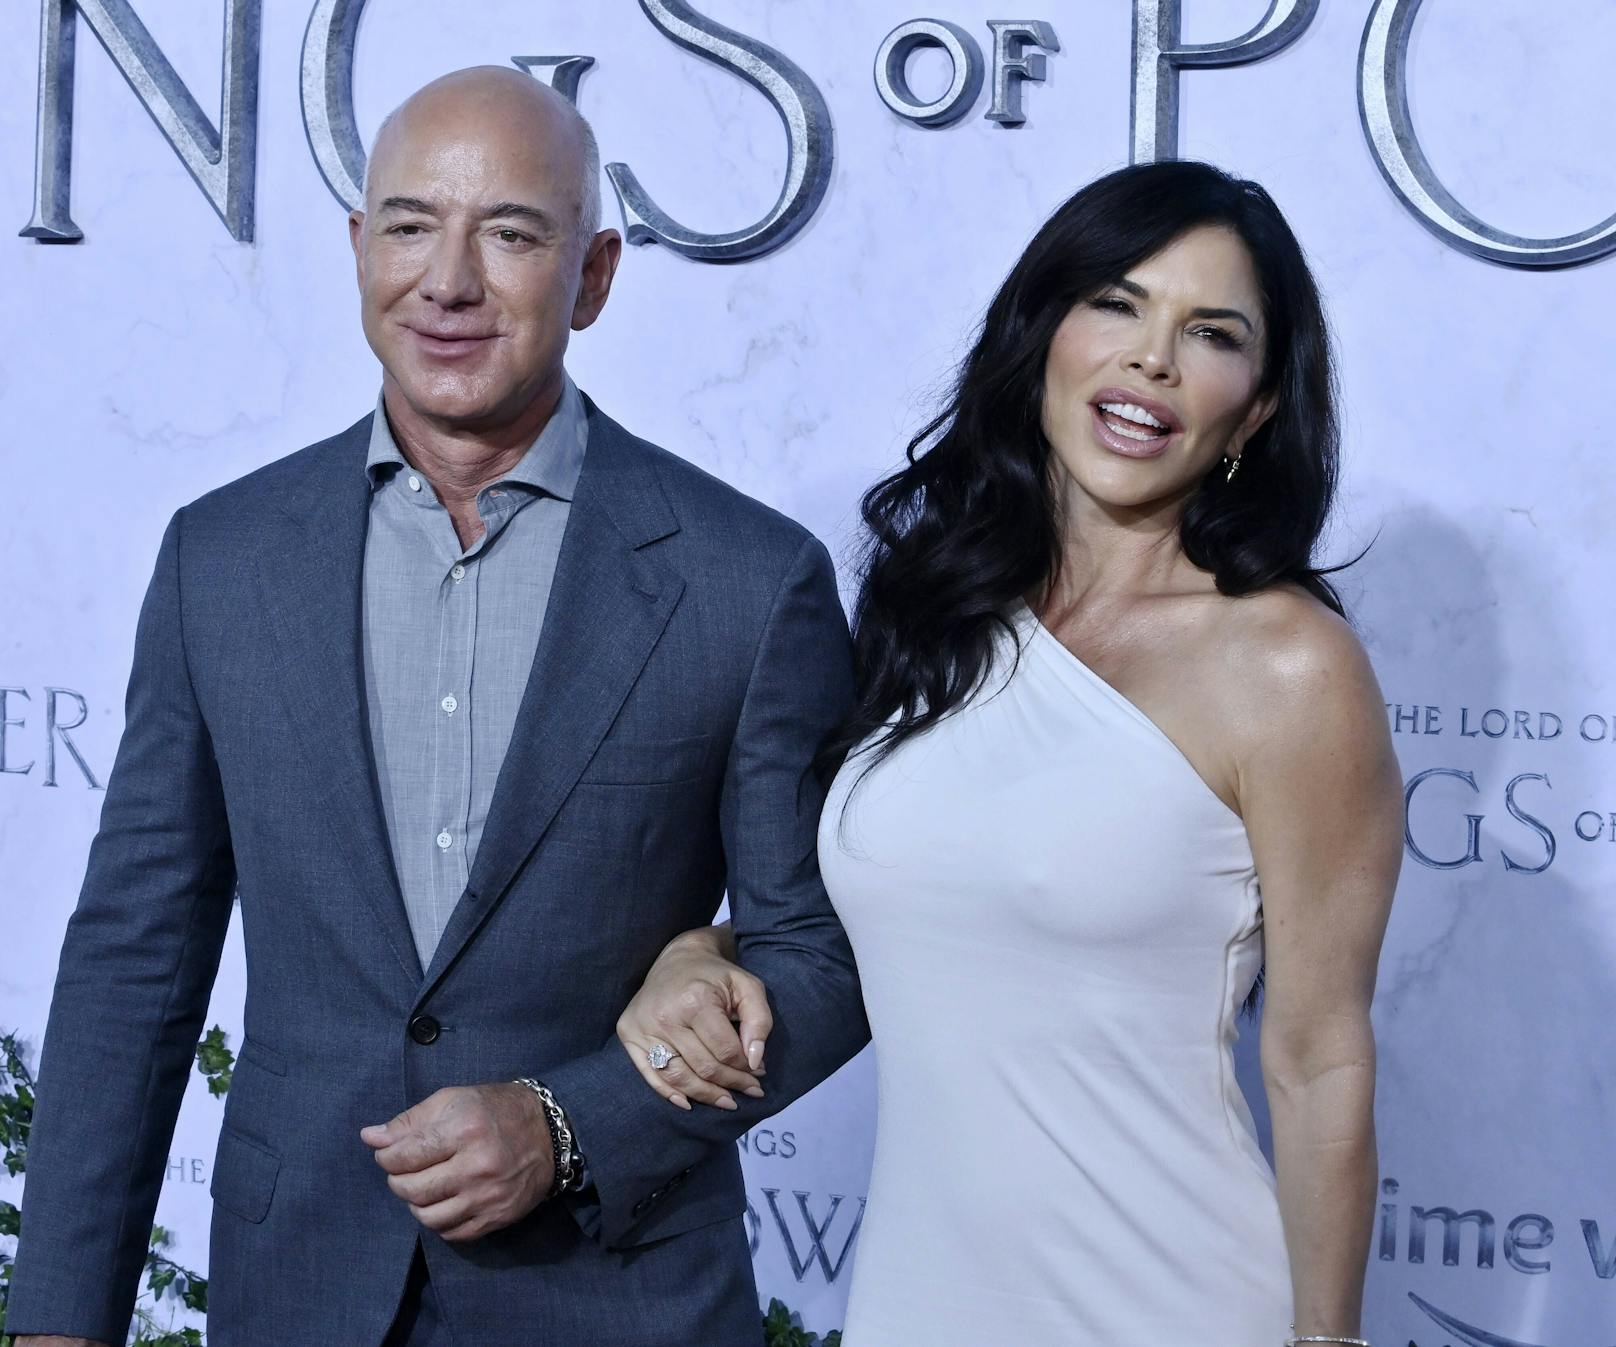 Jeff Bezos und seine Laura Sanchez bei der Premiere von "Der Herr der Ringe: Die Ringe der Macht".